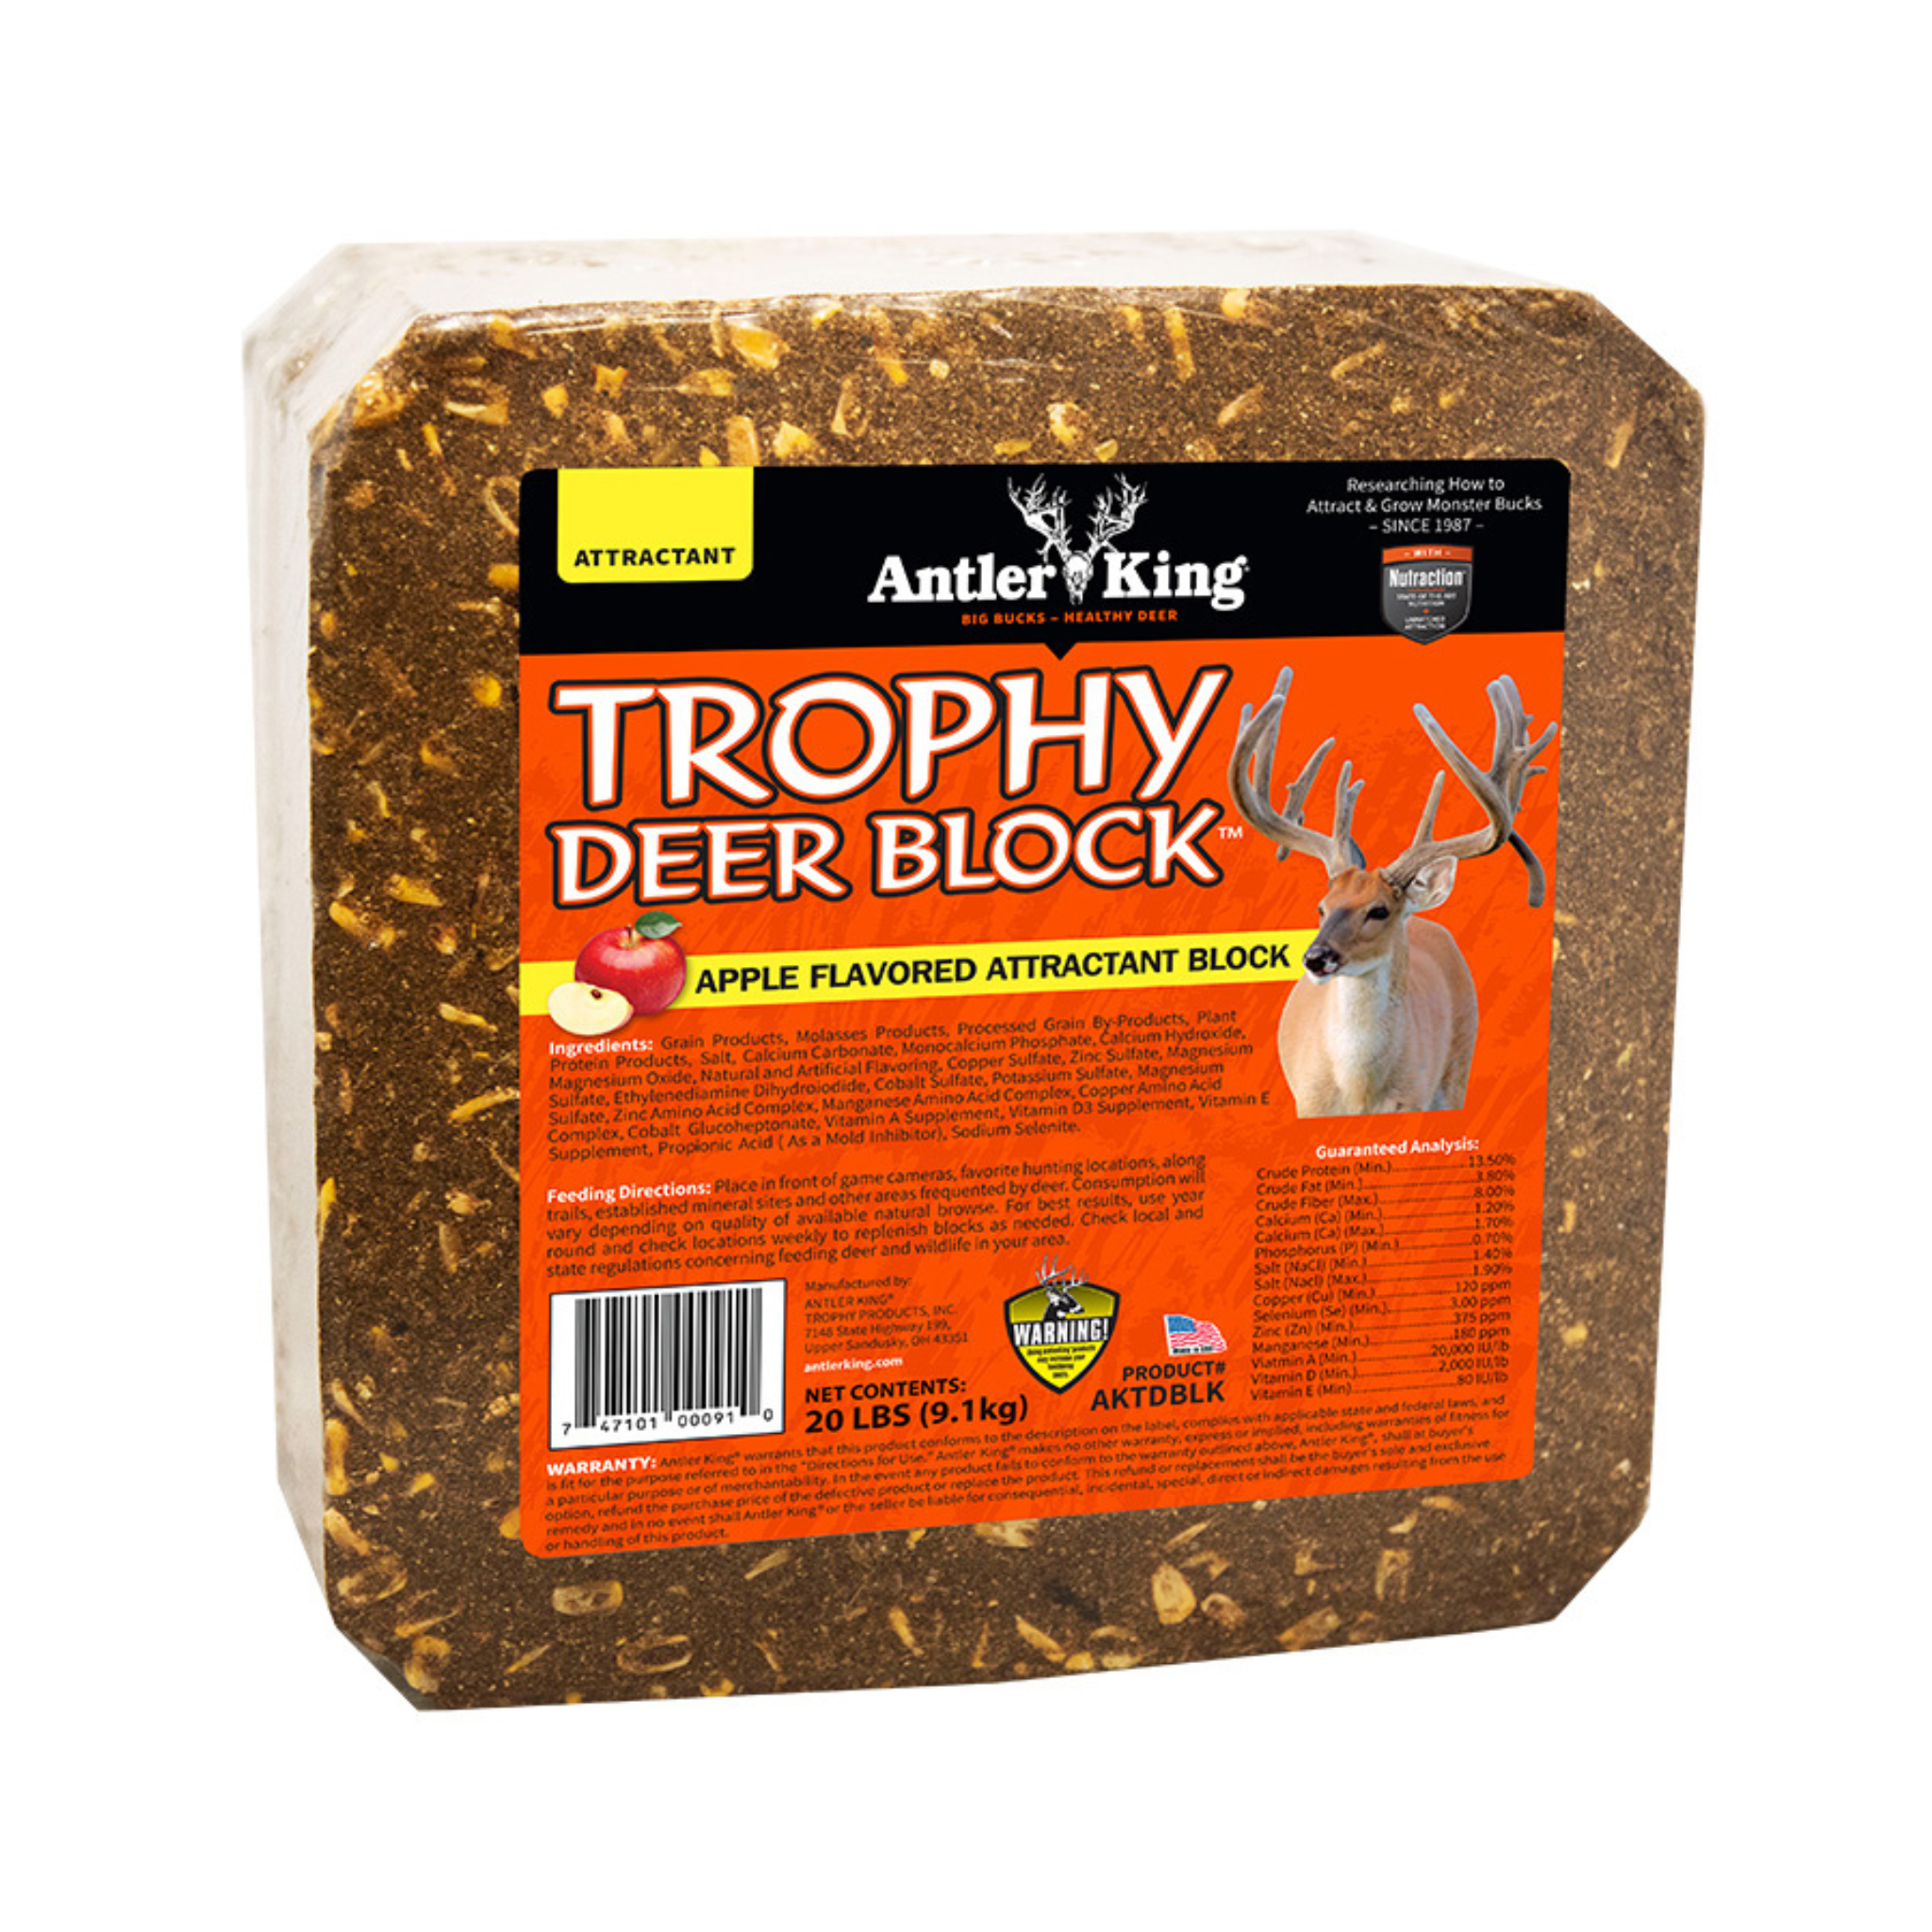 Antler King Trophy Deer Block Deer Attractant